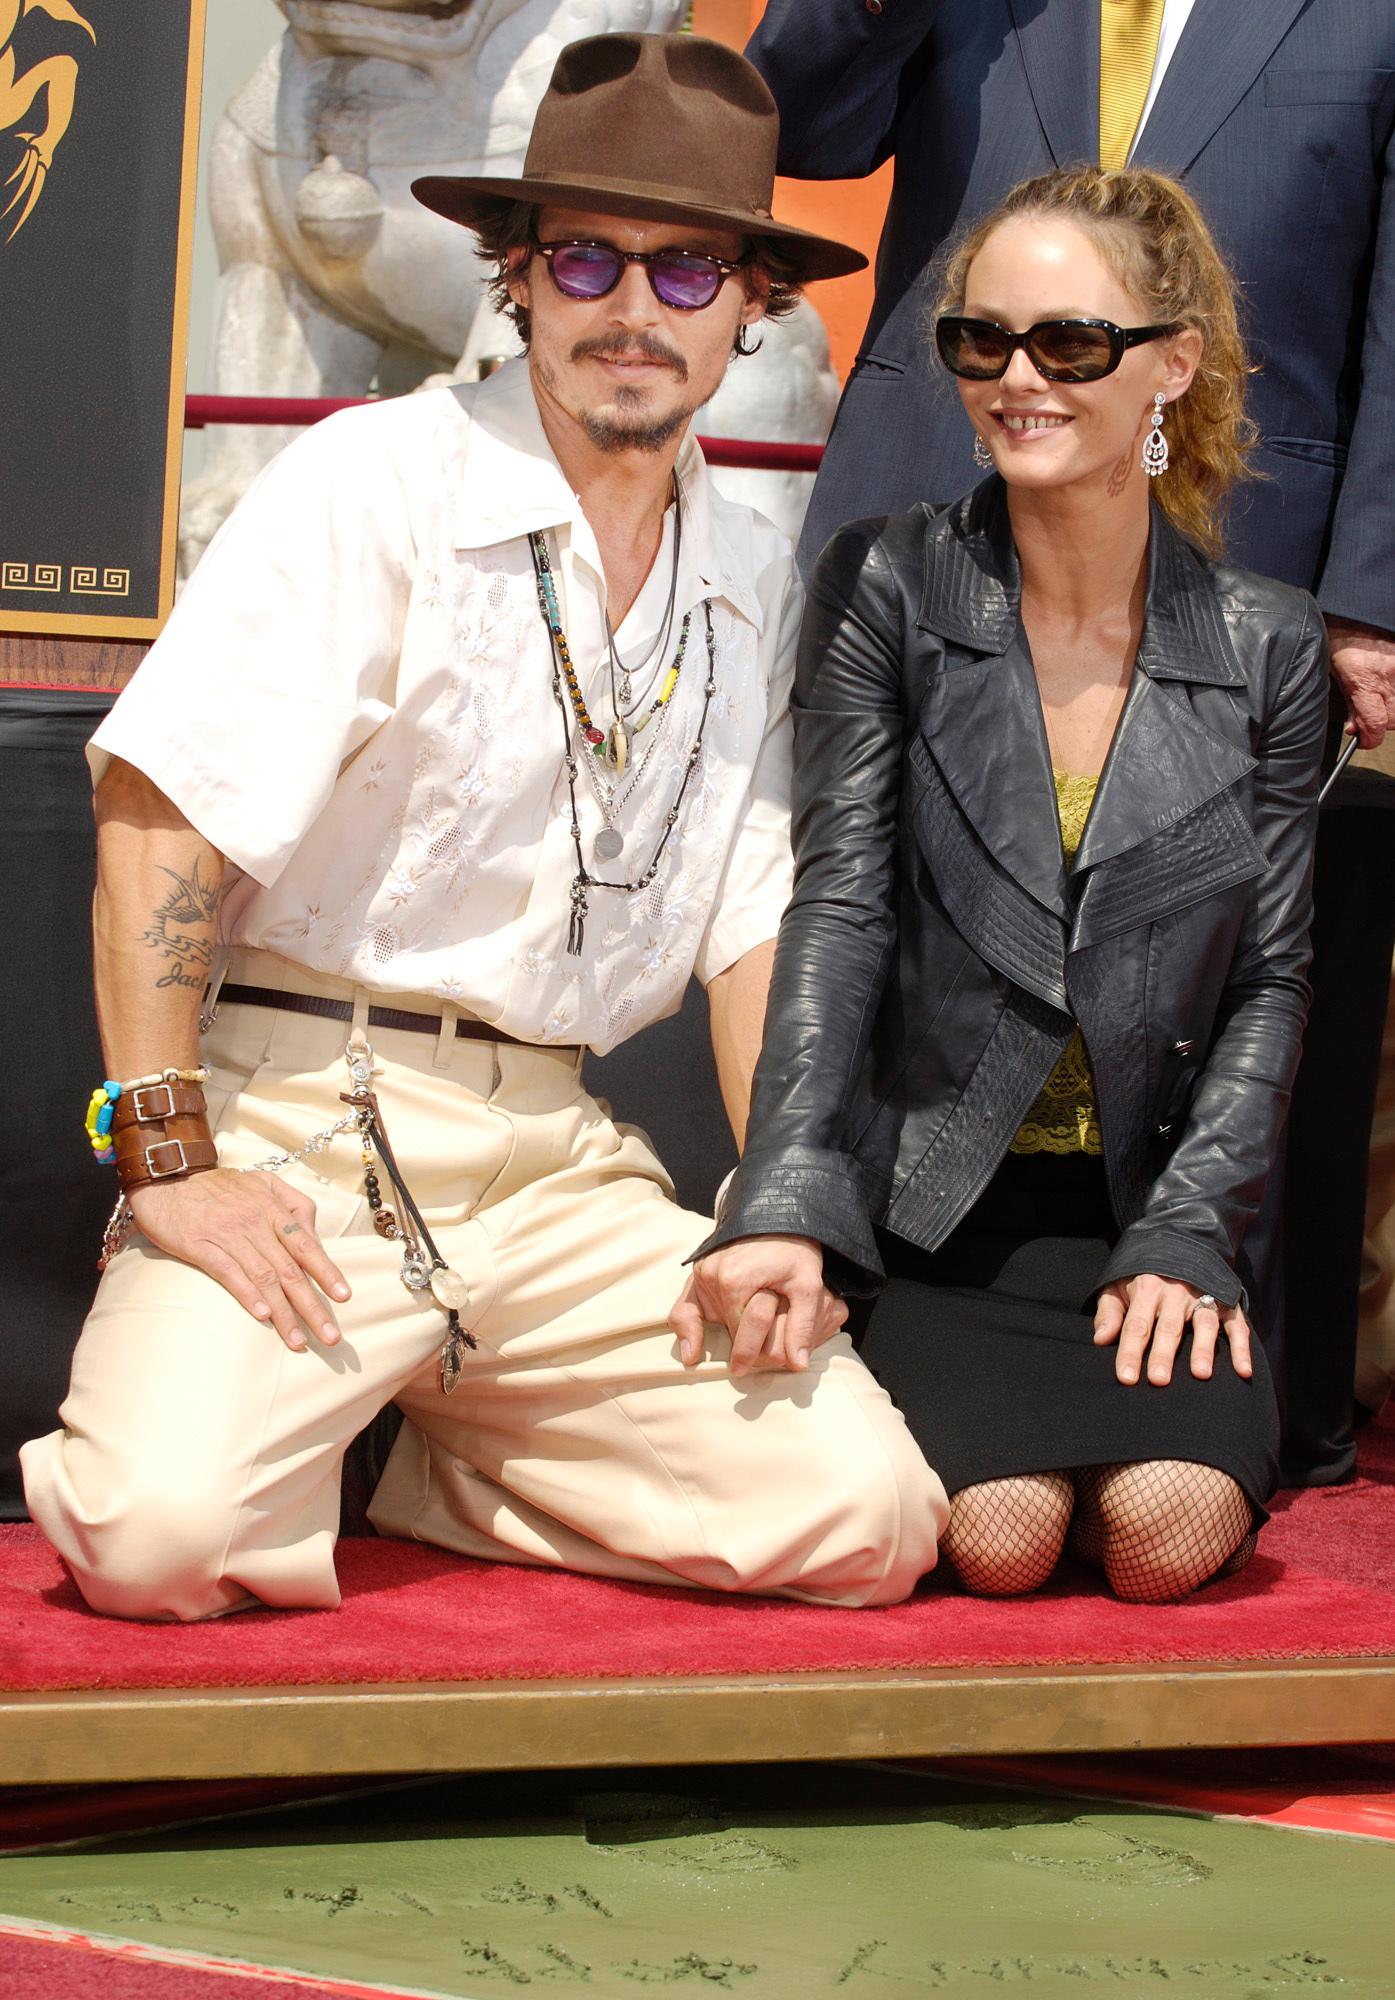 STORT ØYEBLIKK: I 2005 etterlot Depp avtrykk av både hender og føtter i sement i «Grauman’s Chinese Theatre» i Los Angeles. 